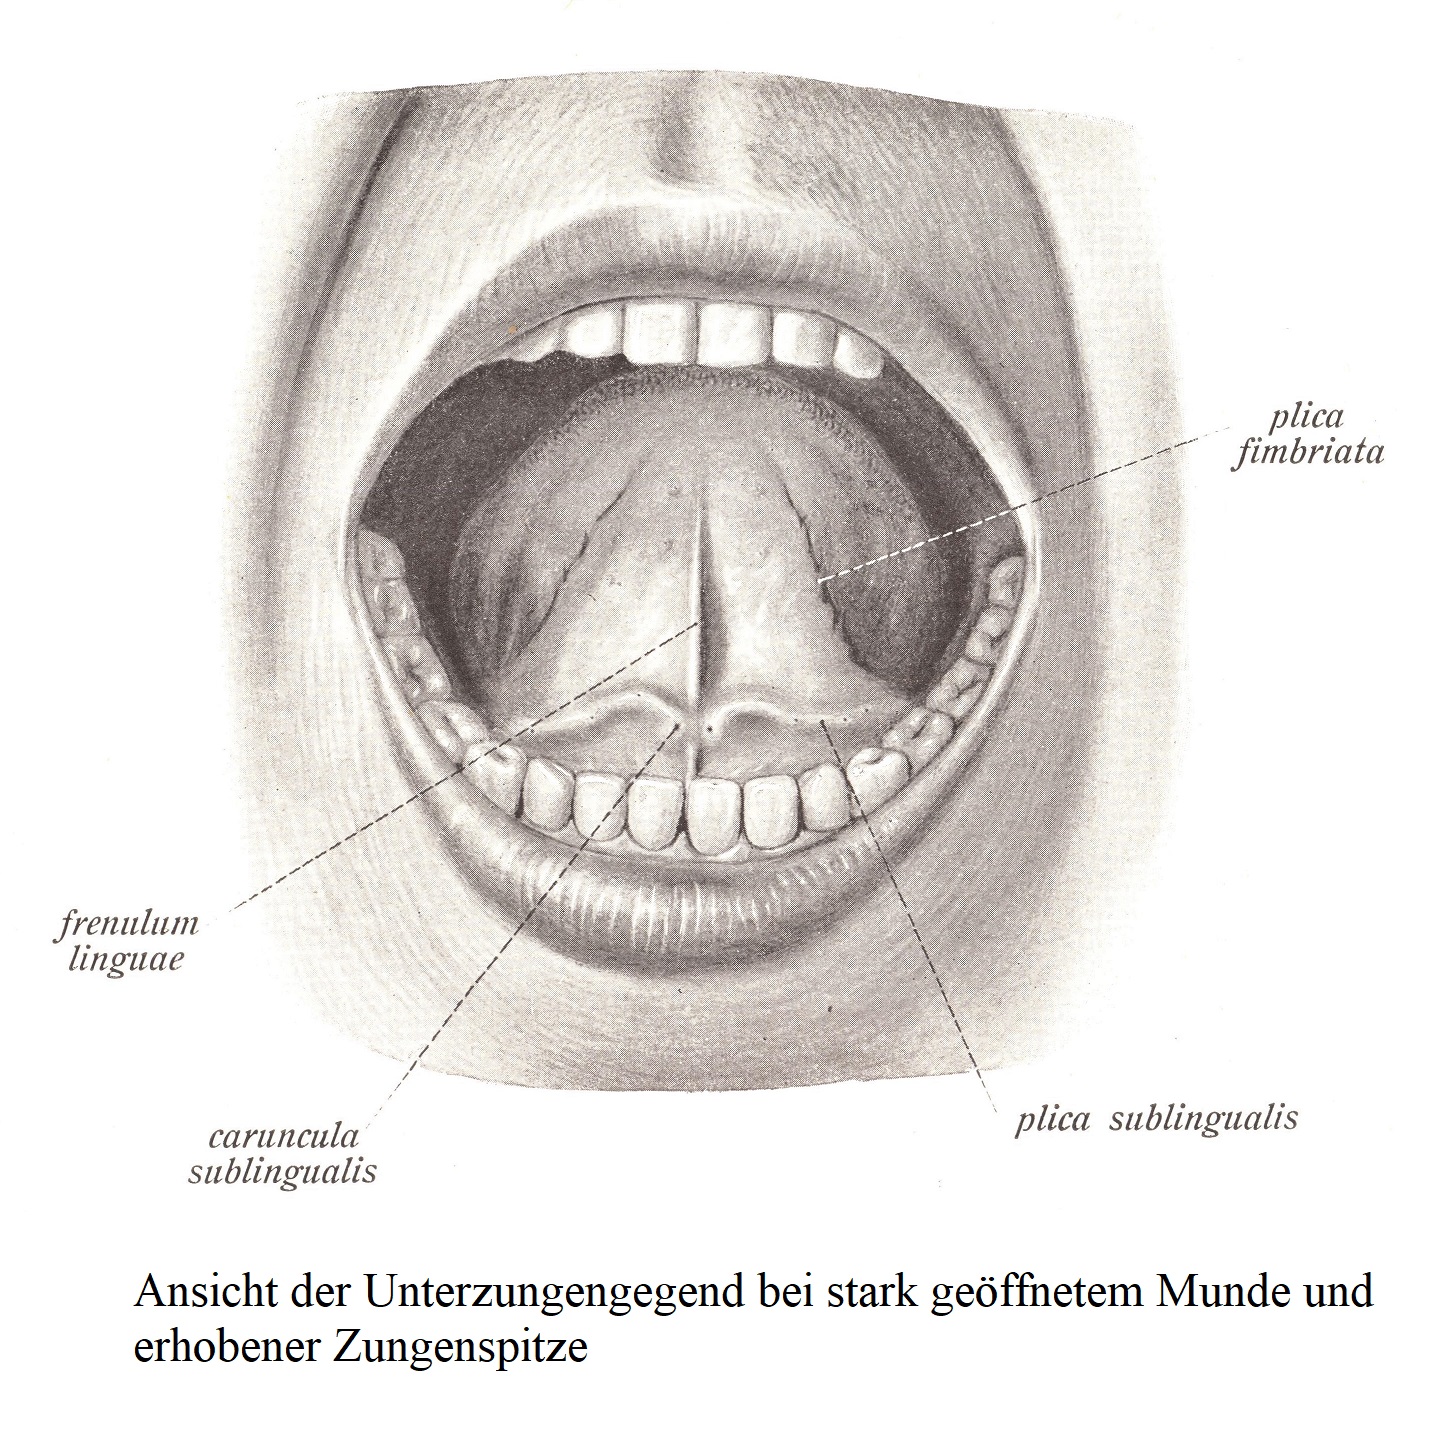 Вид области нижнего языка с широко открытым ртом и приподнятым кончиком языка